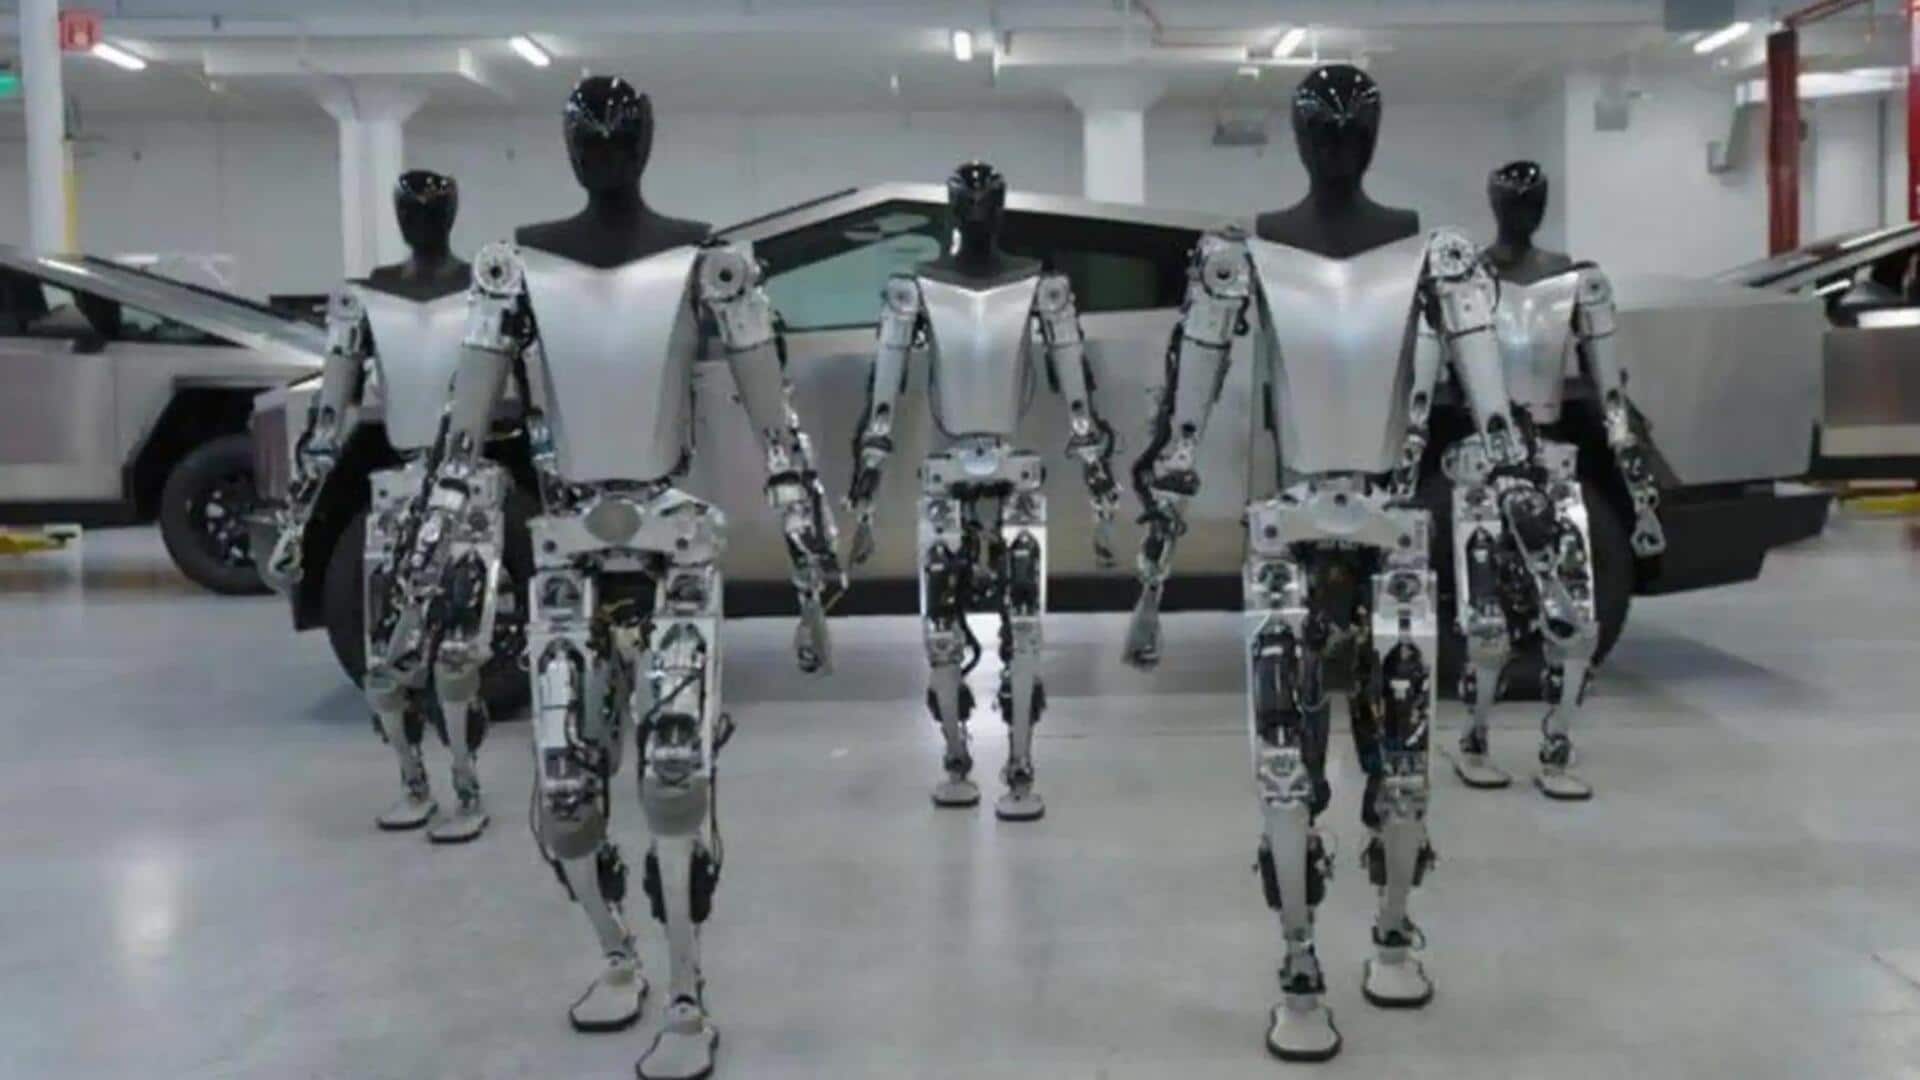 टेस्ला फैक्ट्री में रोबोट ने इंजीनियर पर किया था हमला, पीठ और बांह पर आईं चोटें